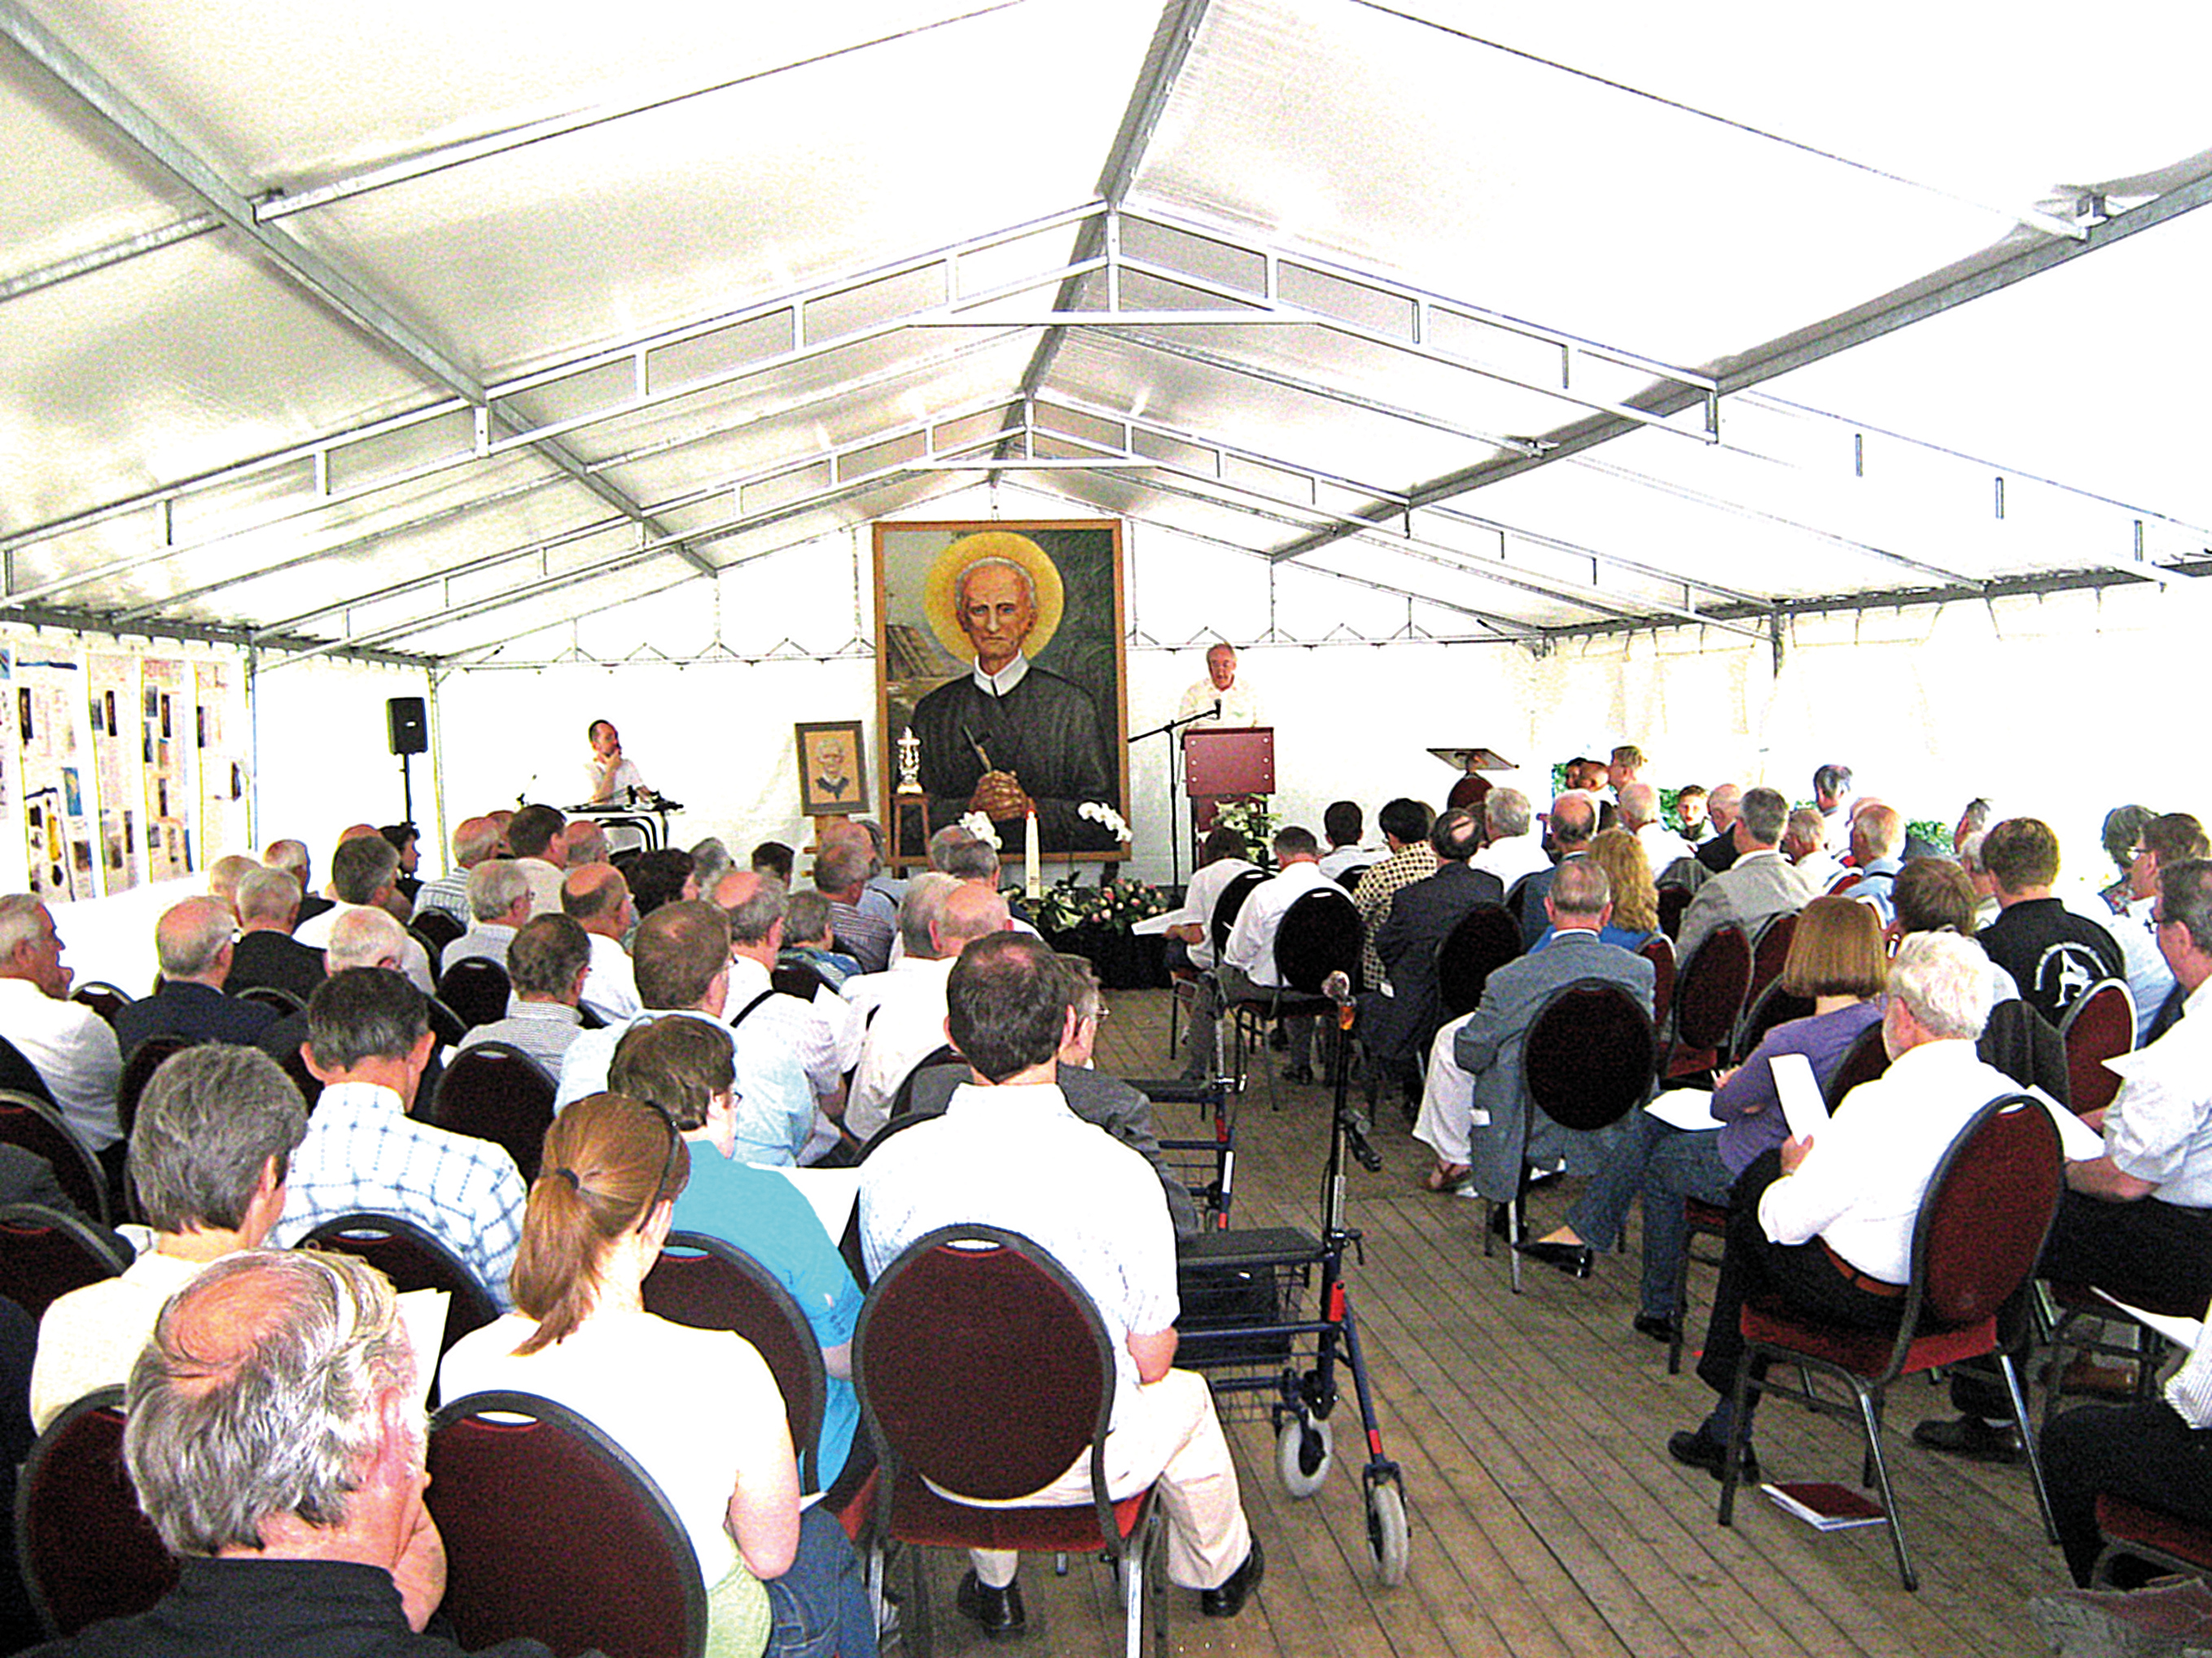 Het Peerke-jubileum van de redemptoristen op 24 juni 2009 vond plaats in een feesttent naast het Peerkepaviljoen dat toen nog niet klaar was.